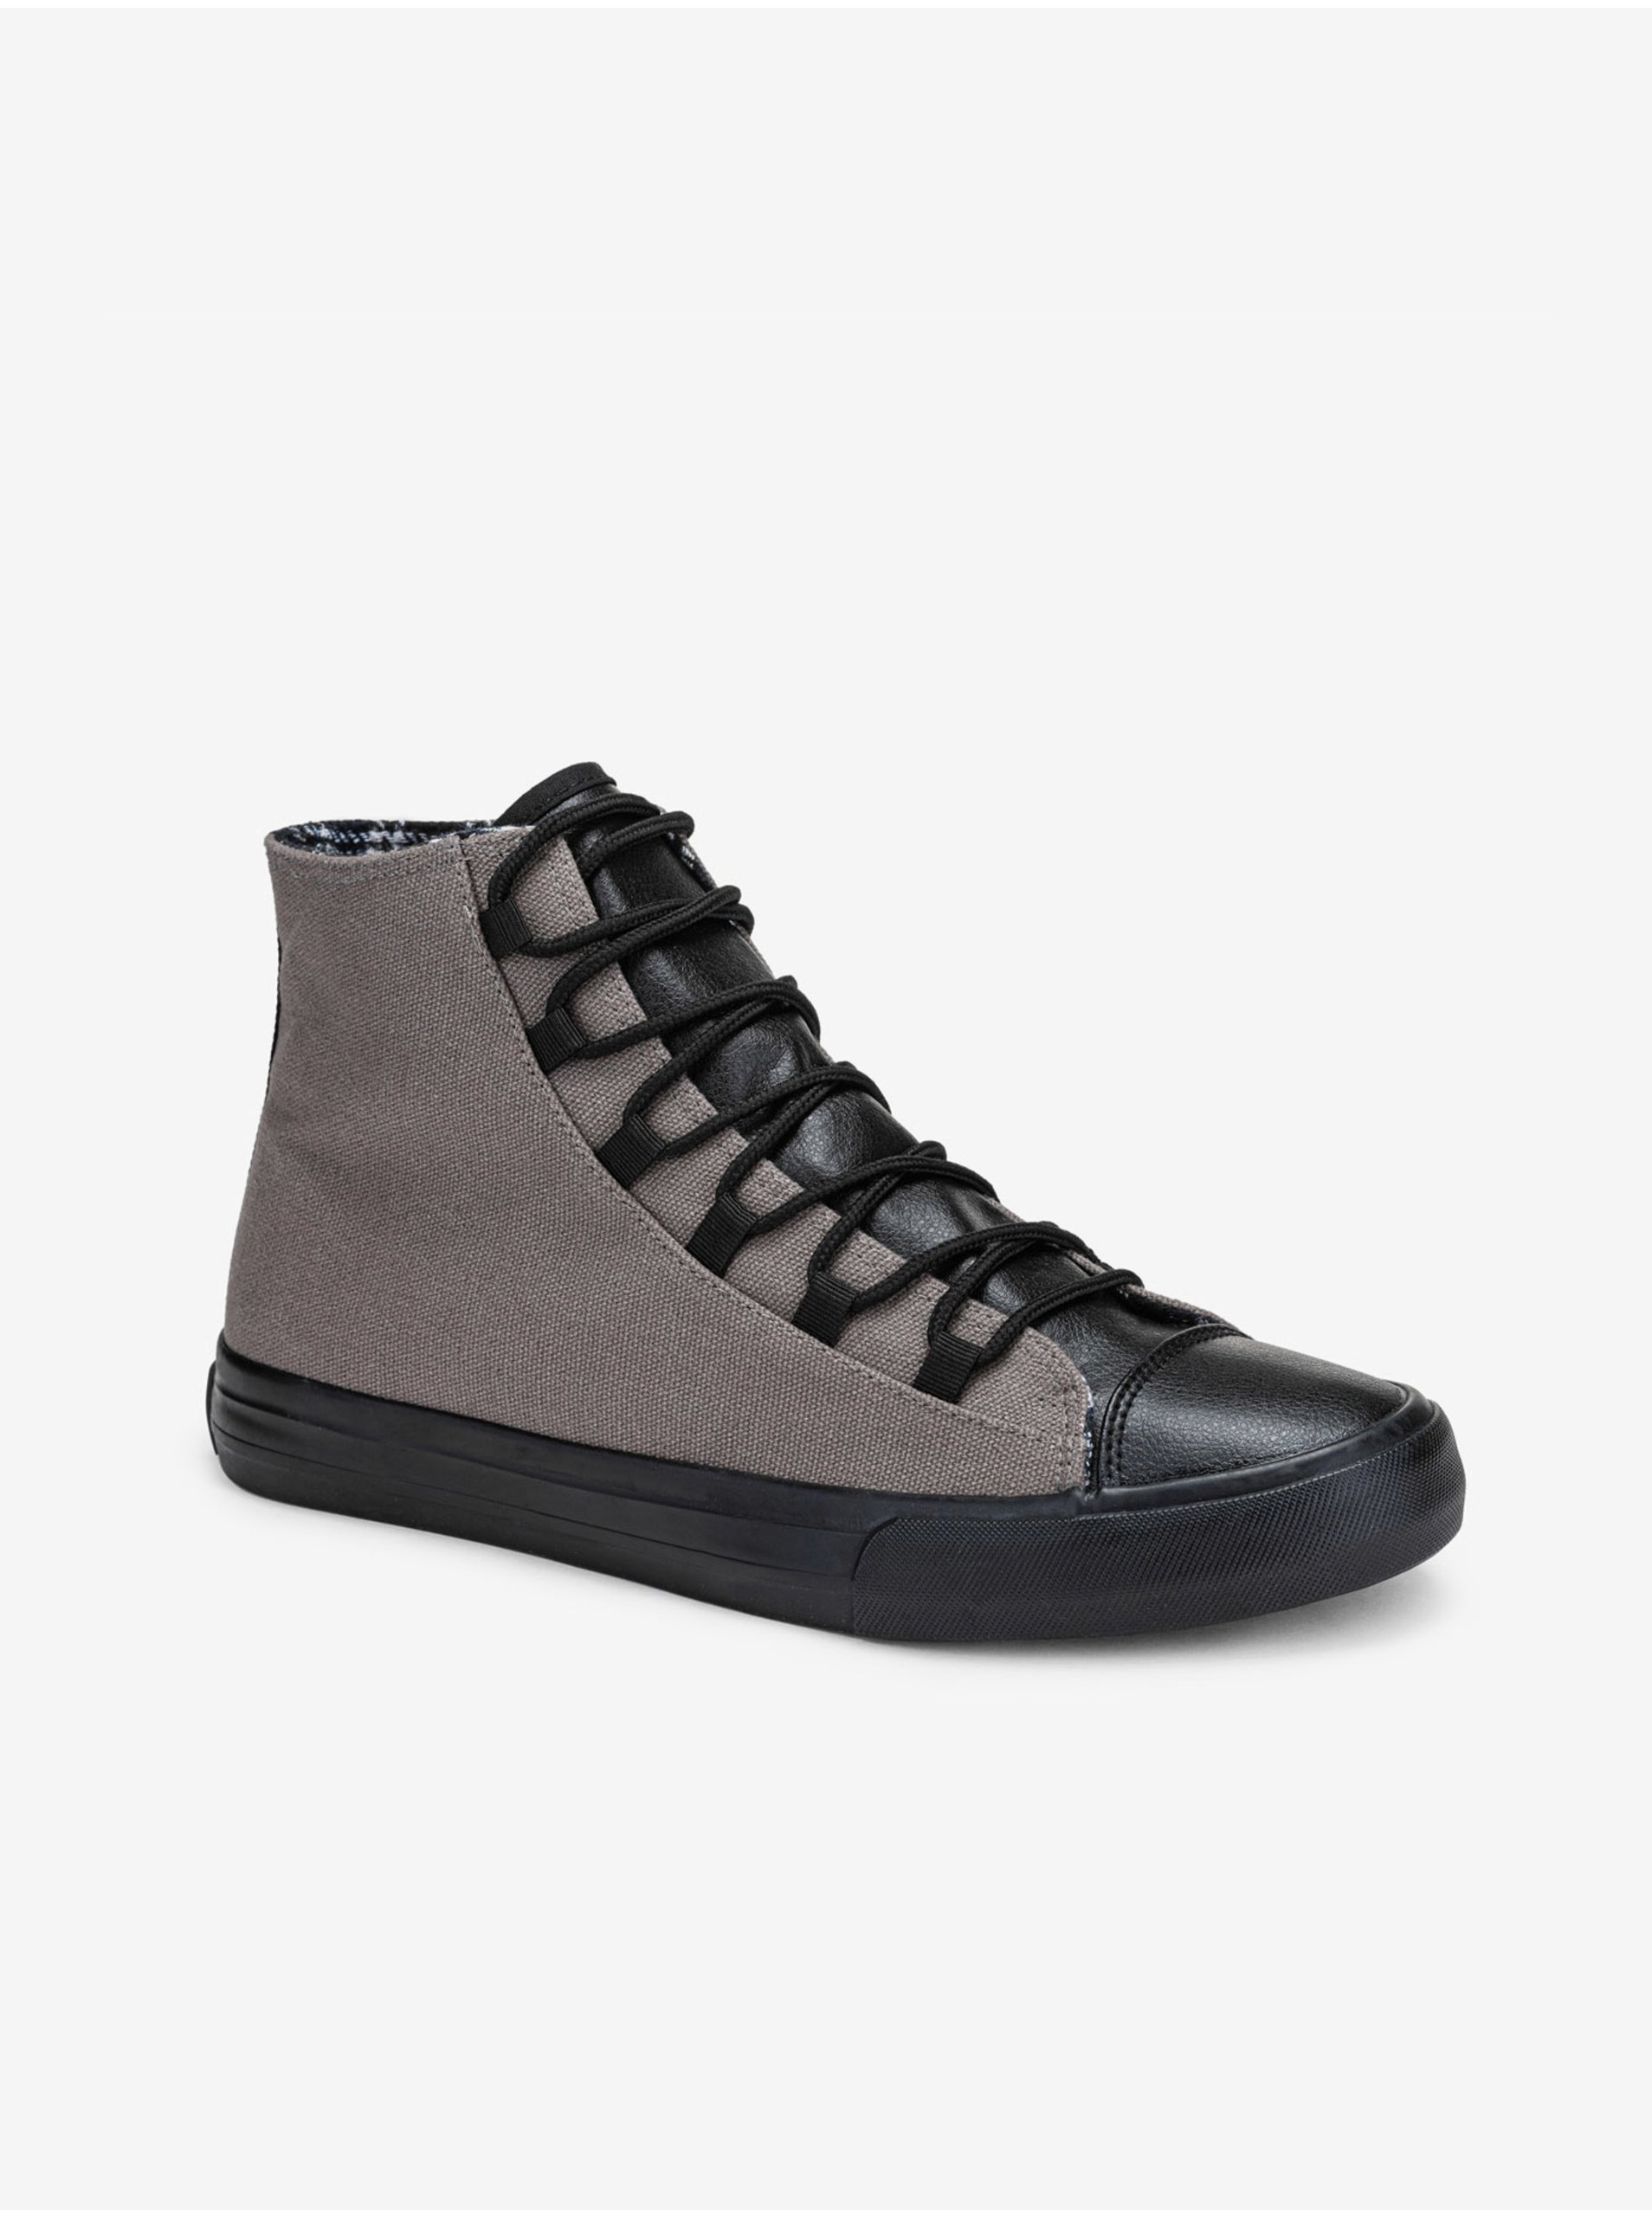 E-shop Černo-šedé pánské sneakers boty Ombre Clothing T378